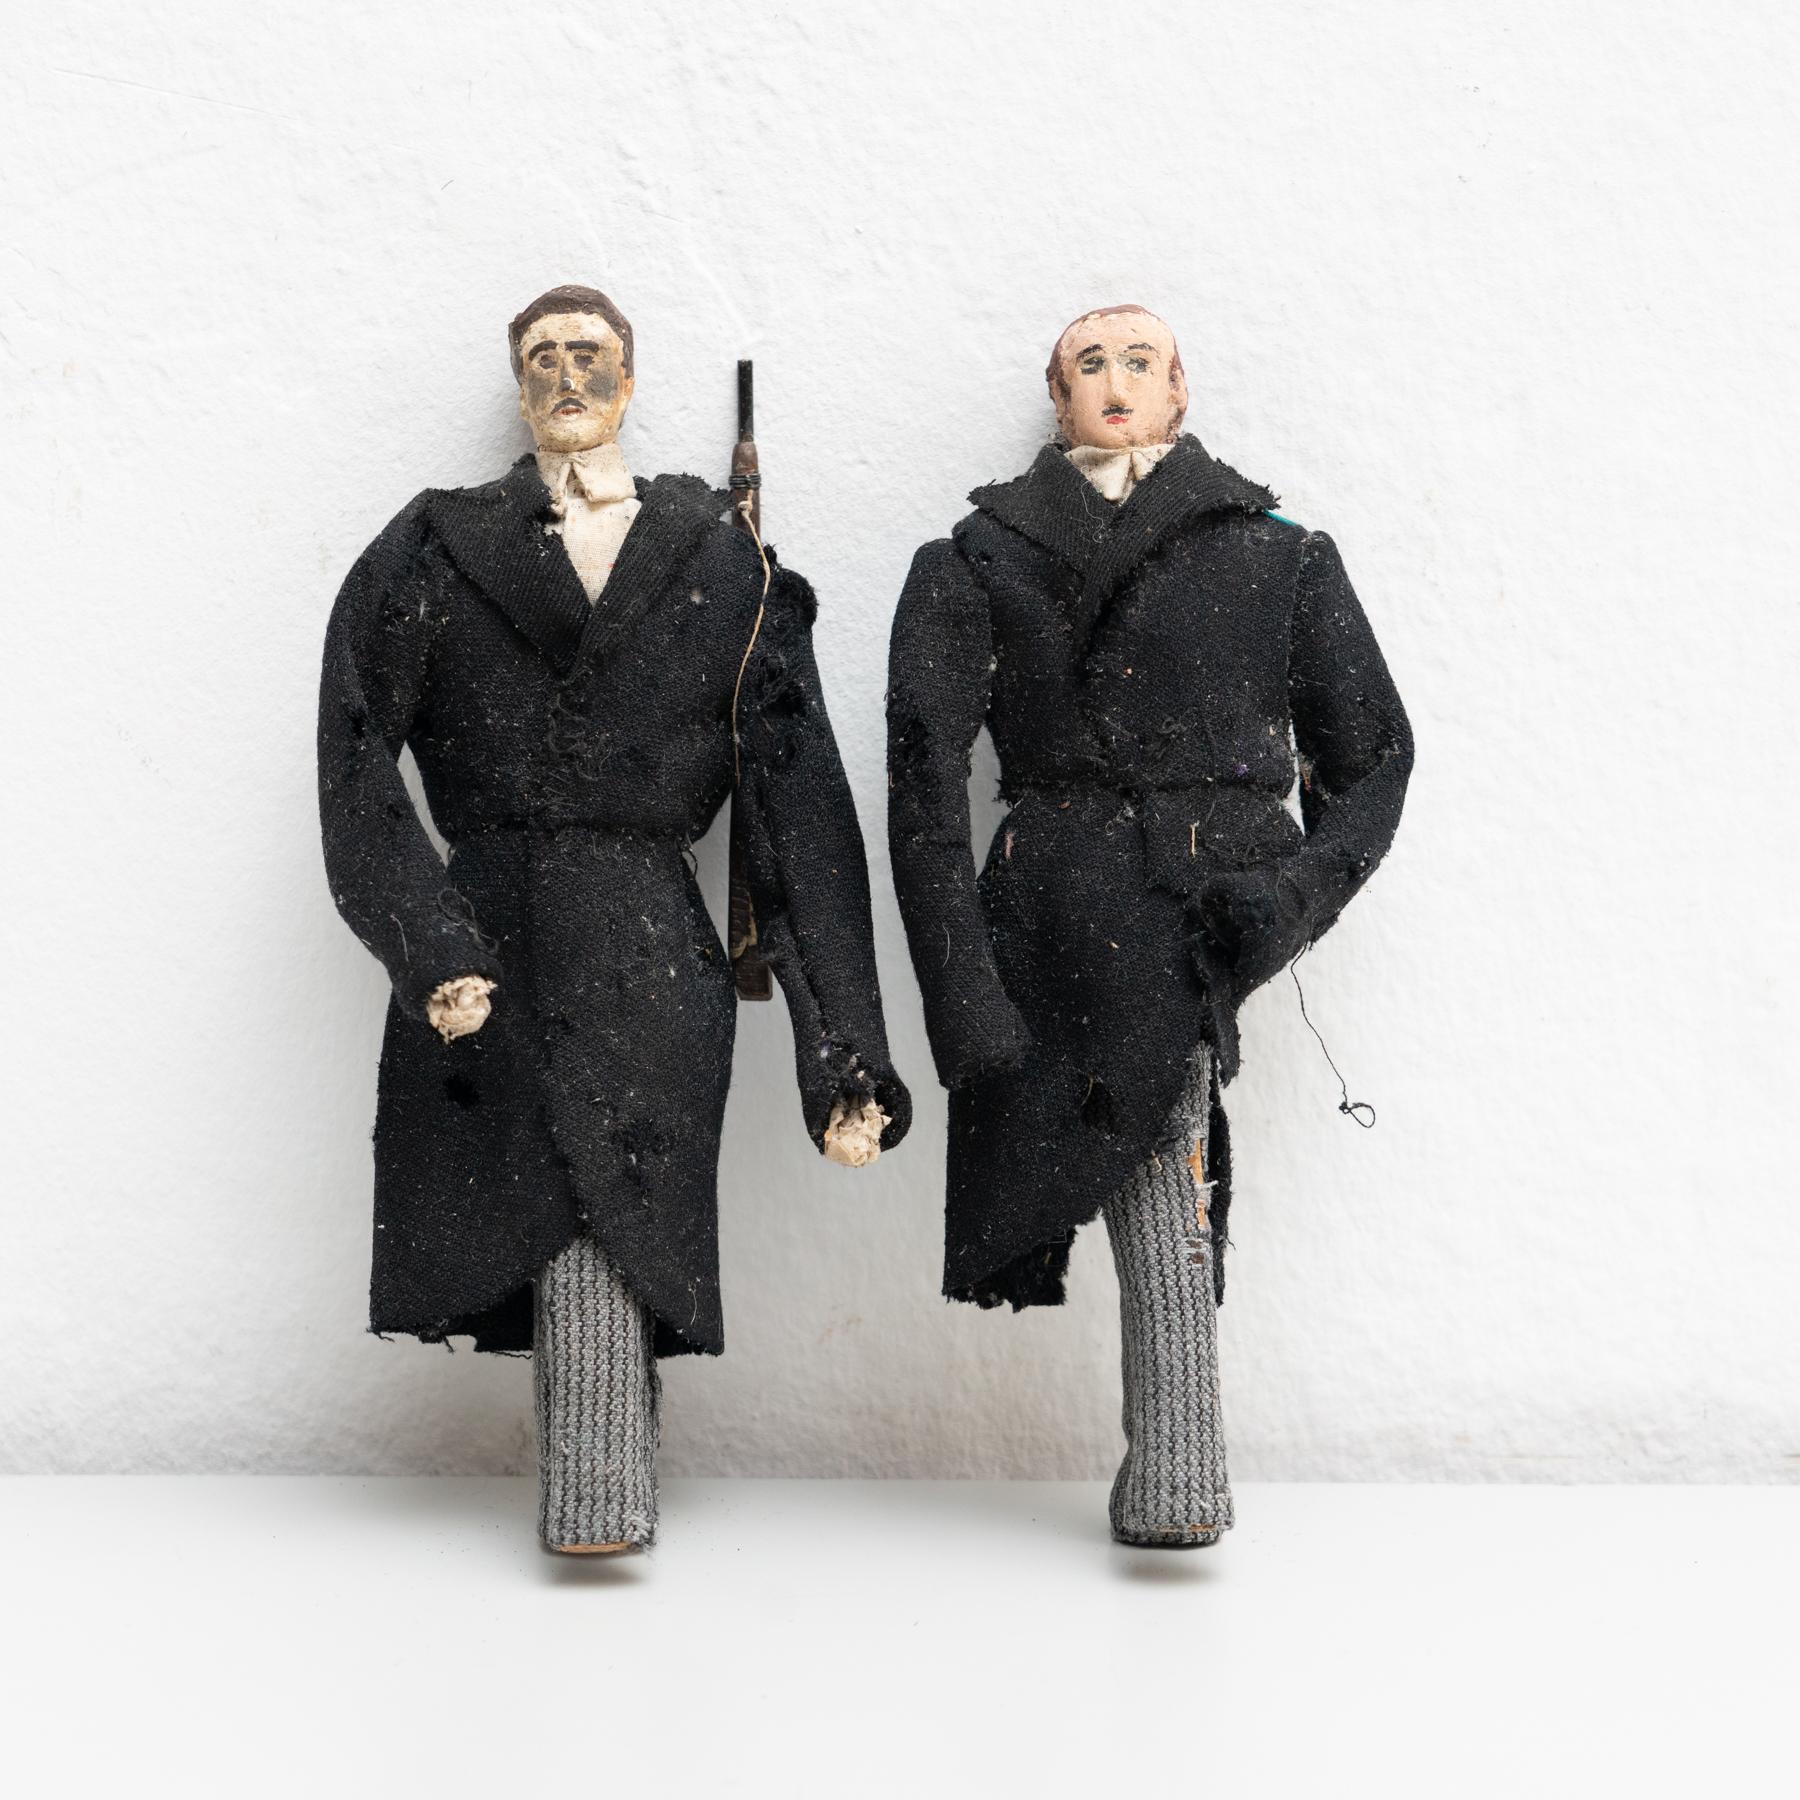 Paire de poupées de chiffon peintes à la main représentant deux fusiliers, datant du début du 20e siècle. 

Fabriqué vers 1920 en Espagne.

En état d'origine, avec une usure mineure conforme à l'âge et à l'utilisation, préservant une belle